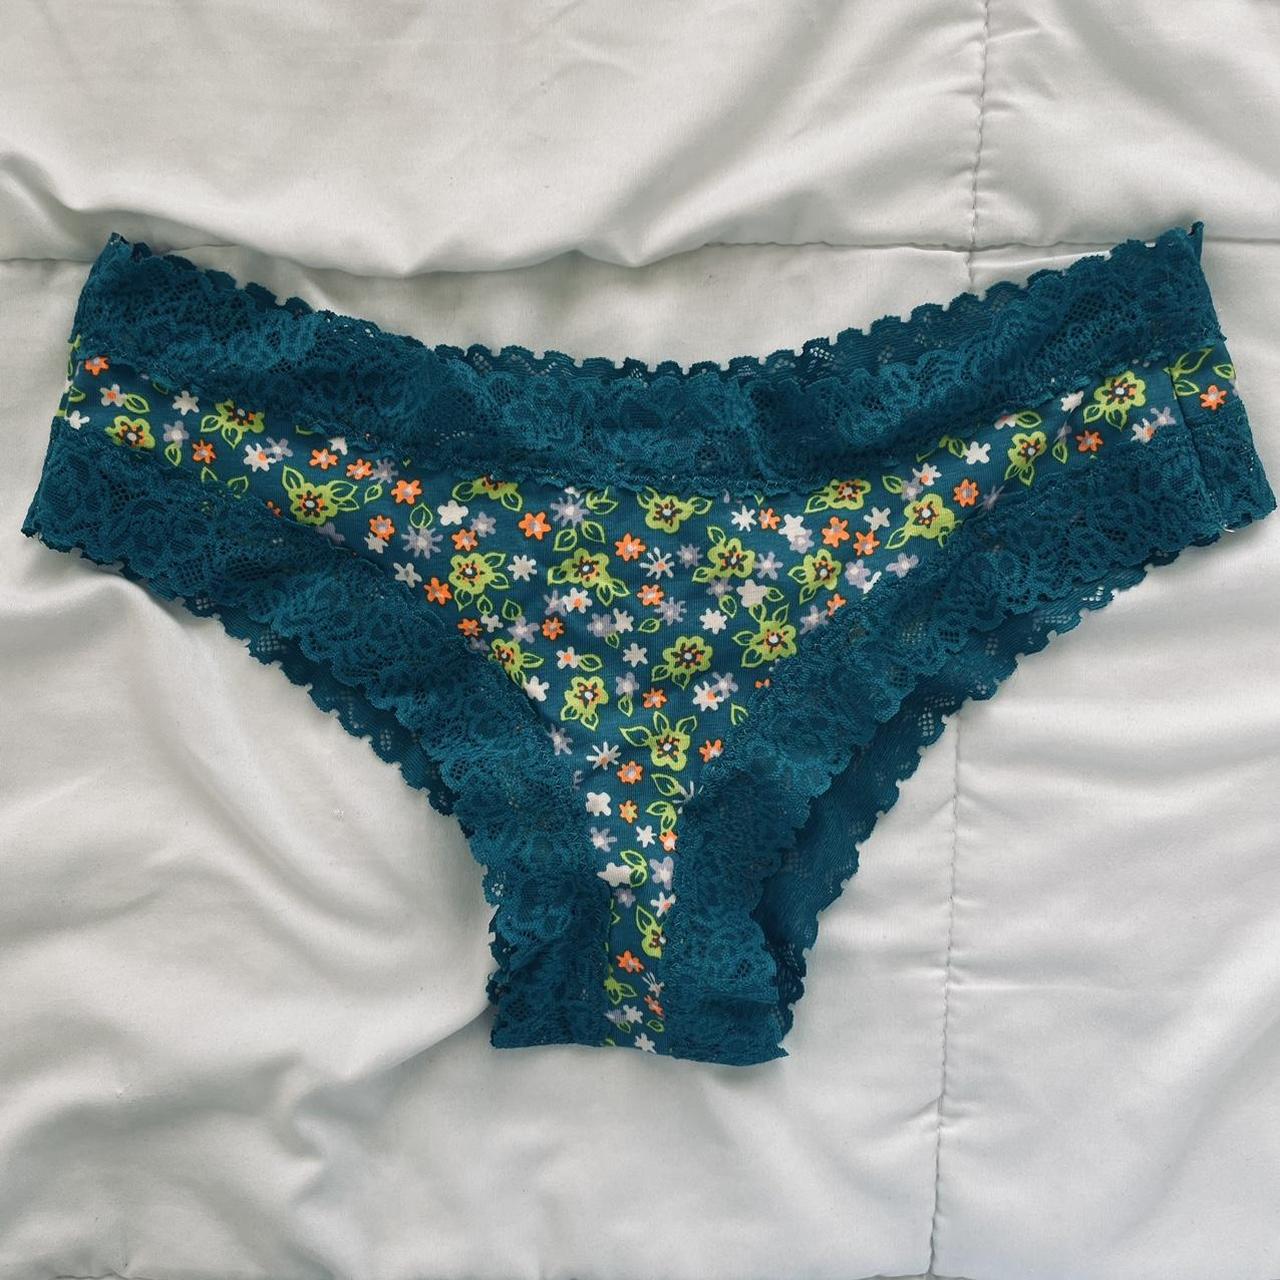 savage x fenty lingerie set bralette and underwear - Depop